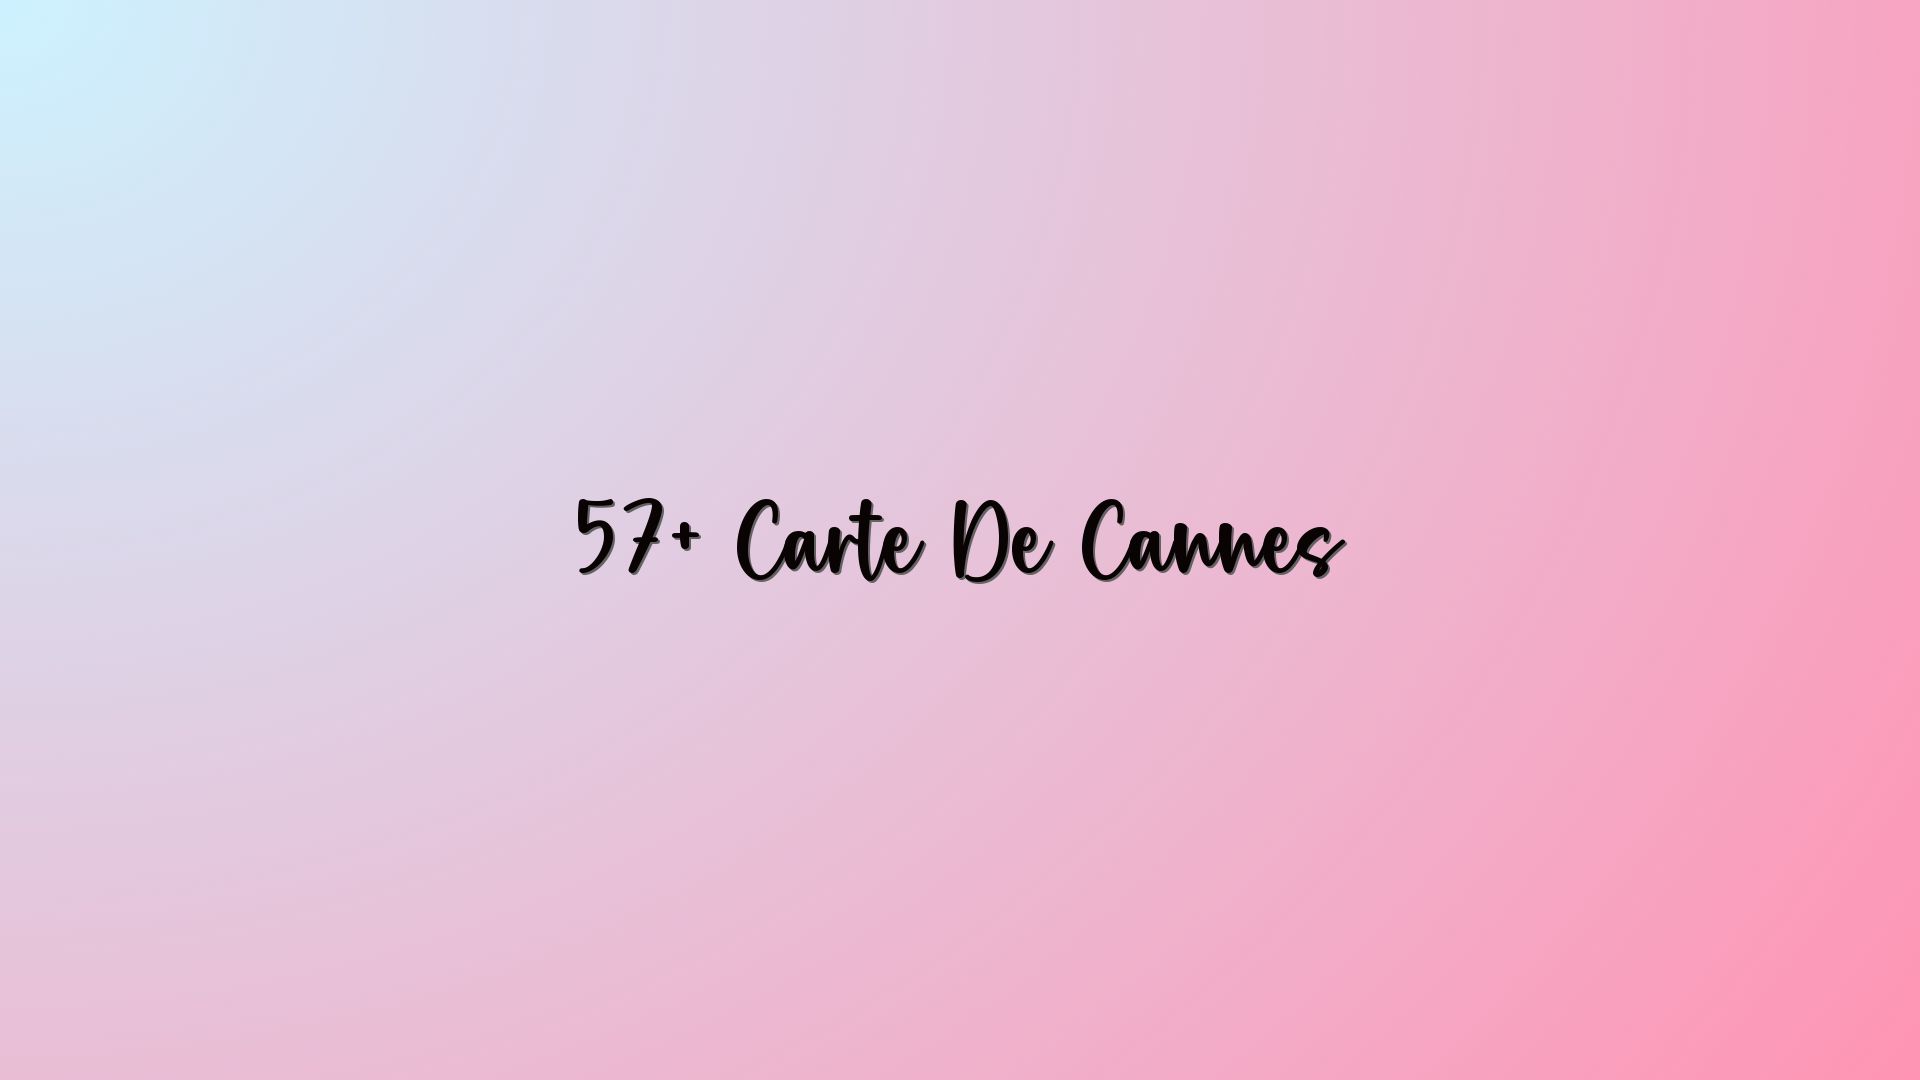 57+ Carte De Cannes